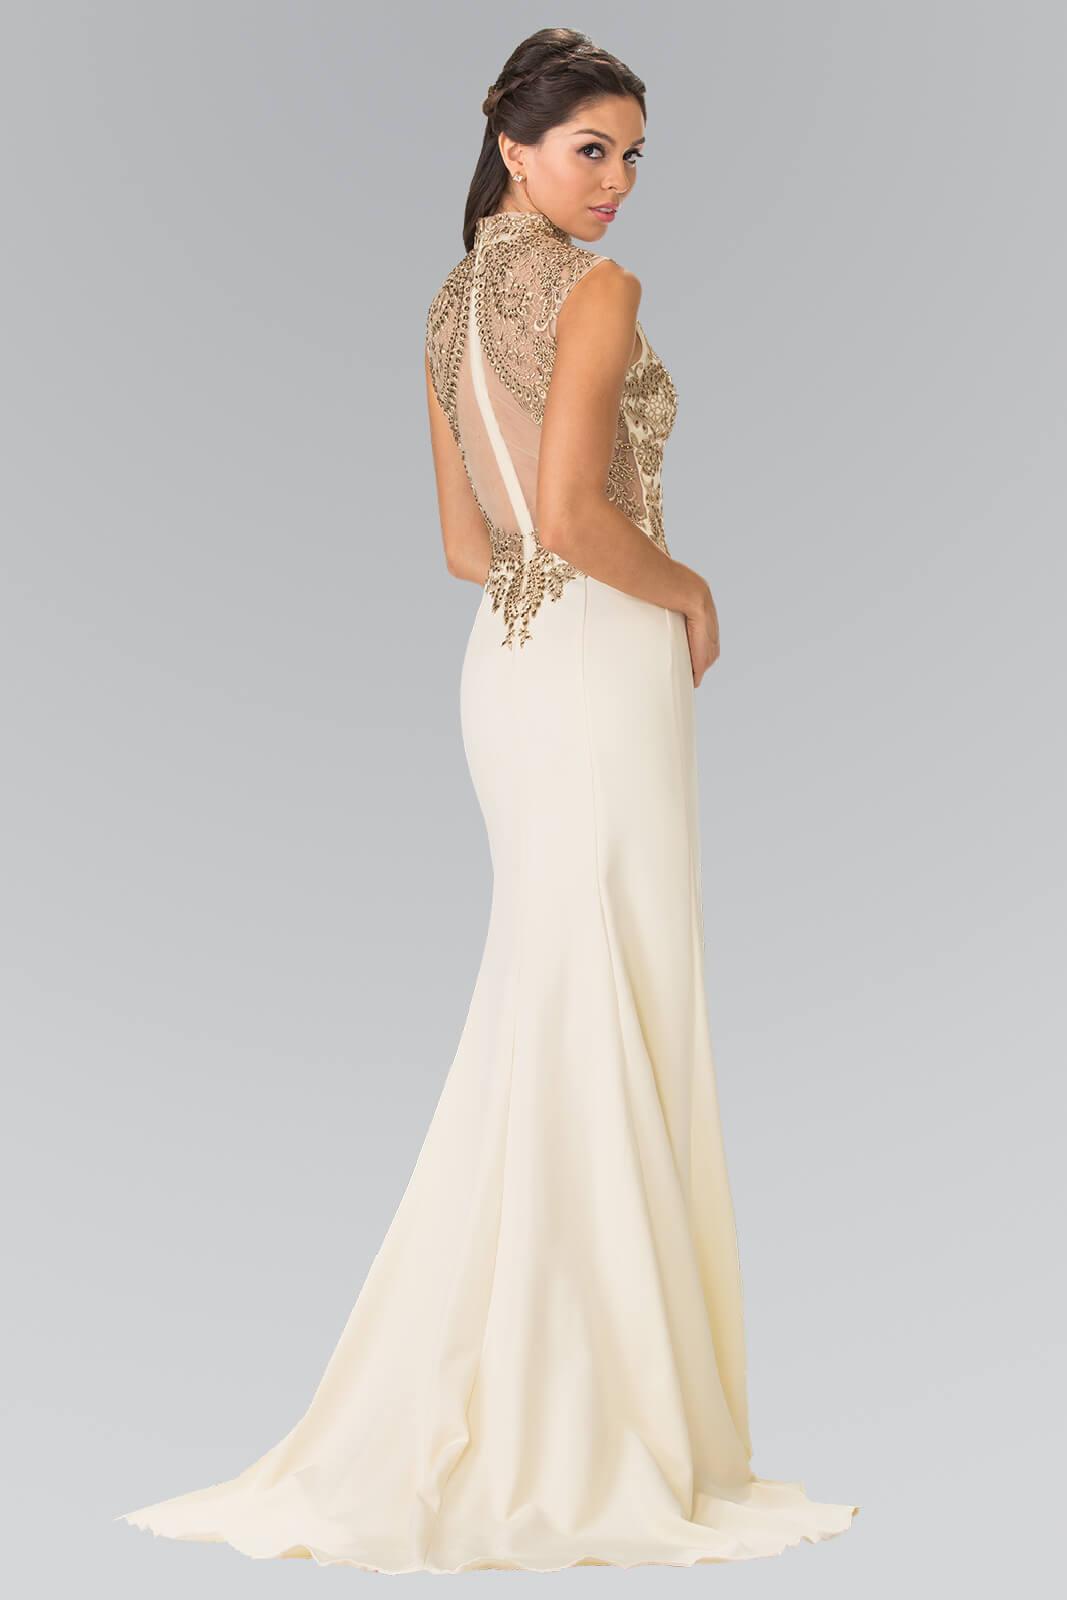 Prom Long Formal Dress Evening Gown - The Dress Outlet Elizabeth K